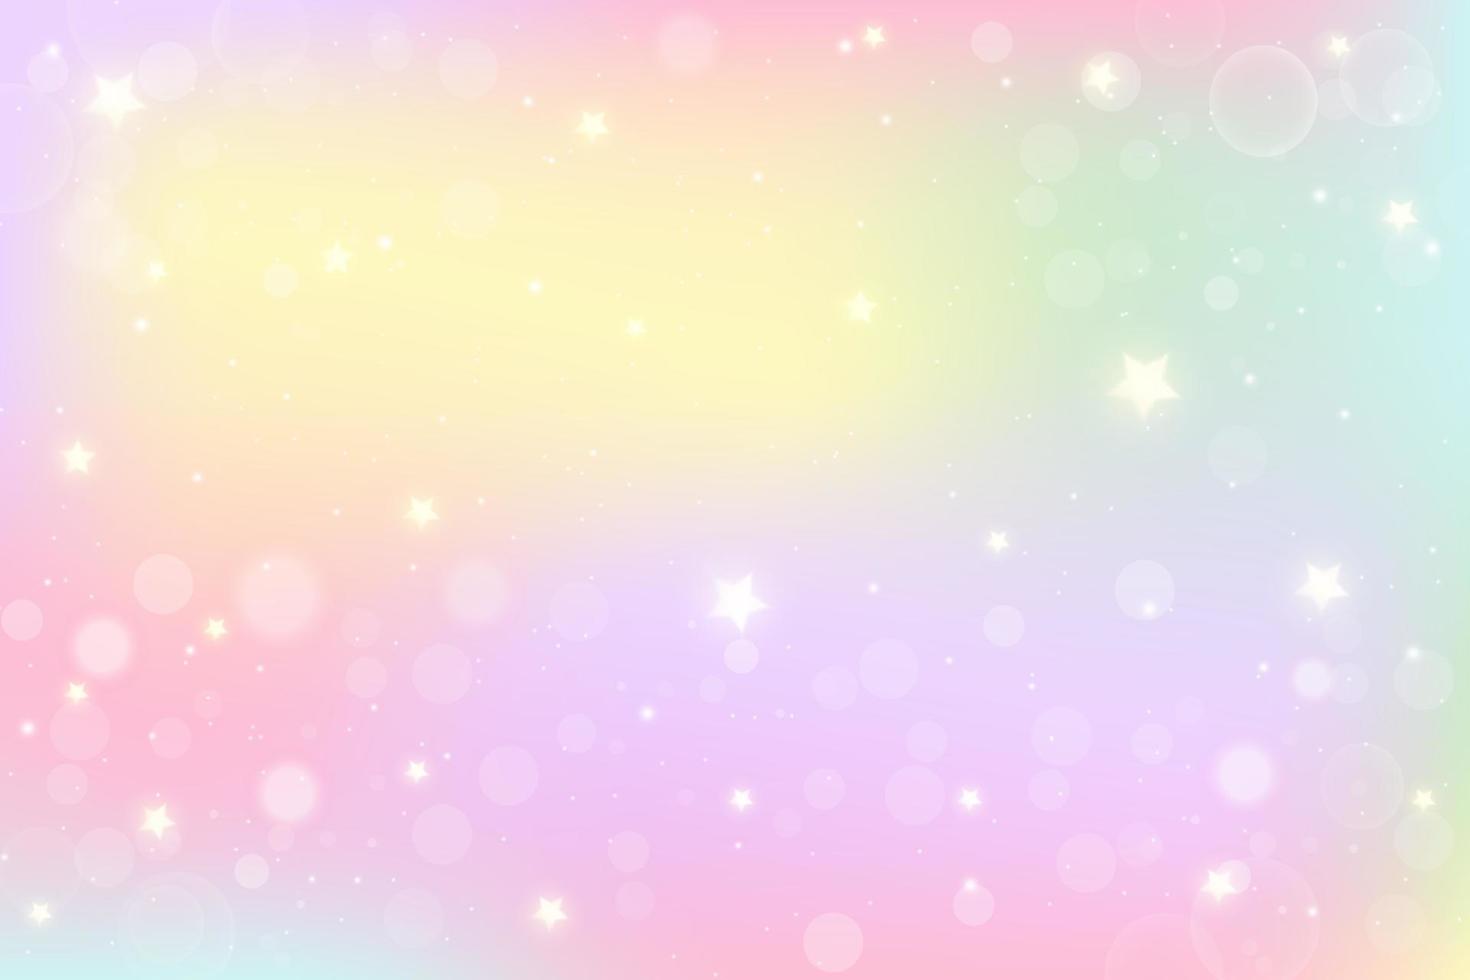 Regenbogen-Fantasie-Hintergrund. holografische Illustration in Pastellfarben. mehrfarbiger himmel mit sternen und bokeh vektor